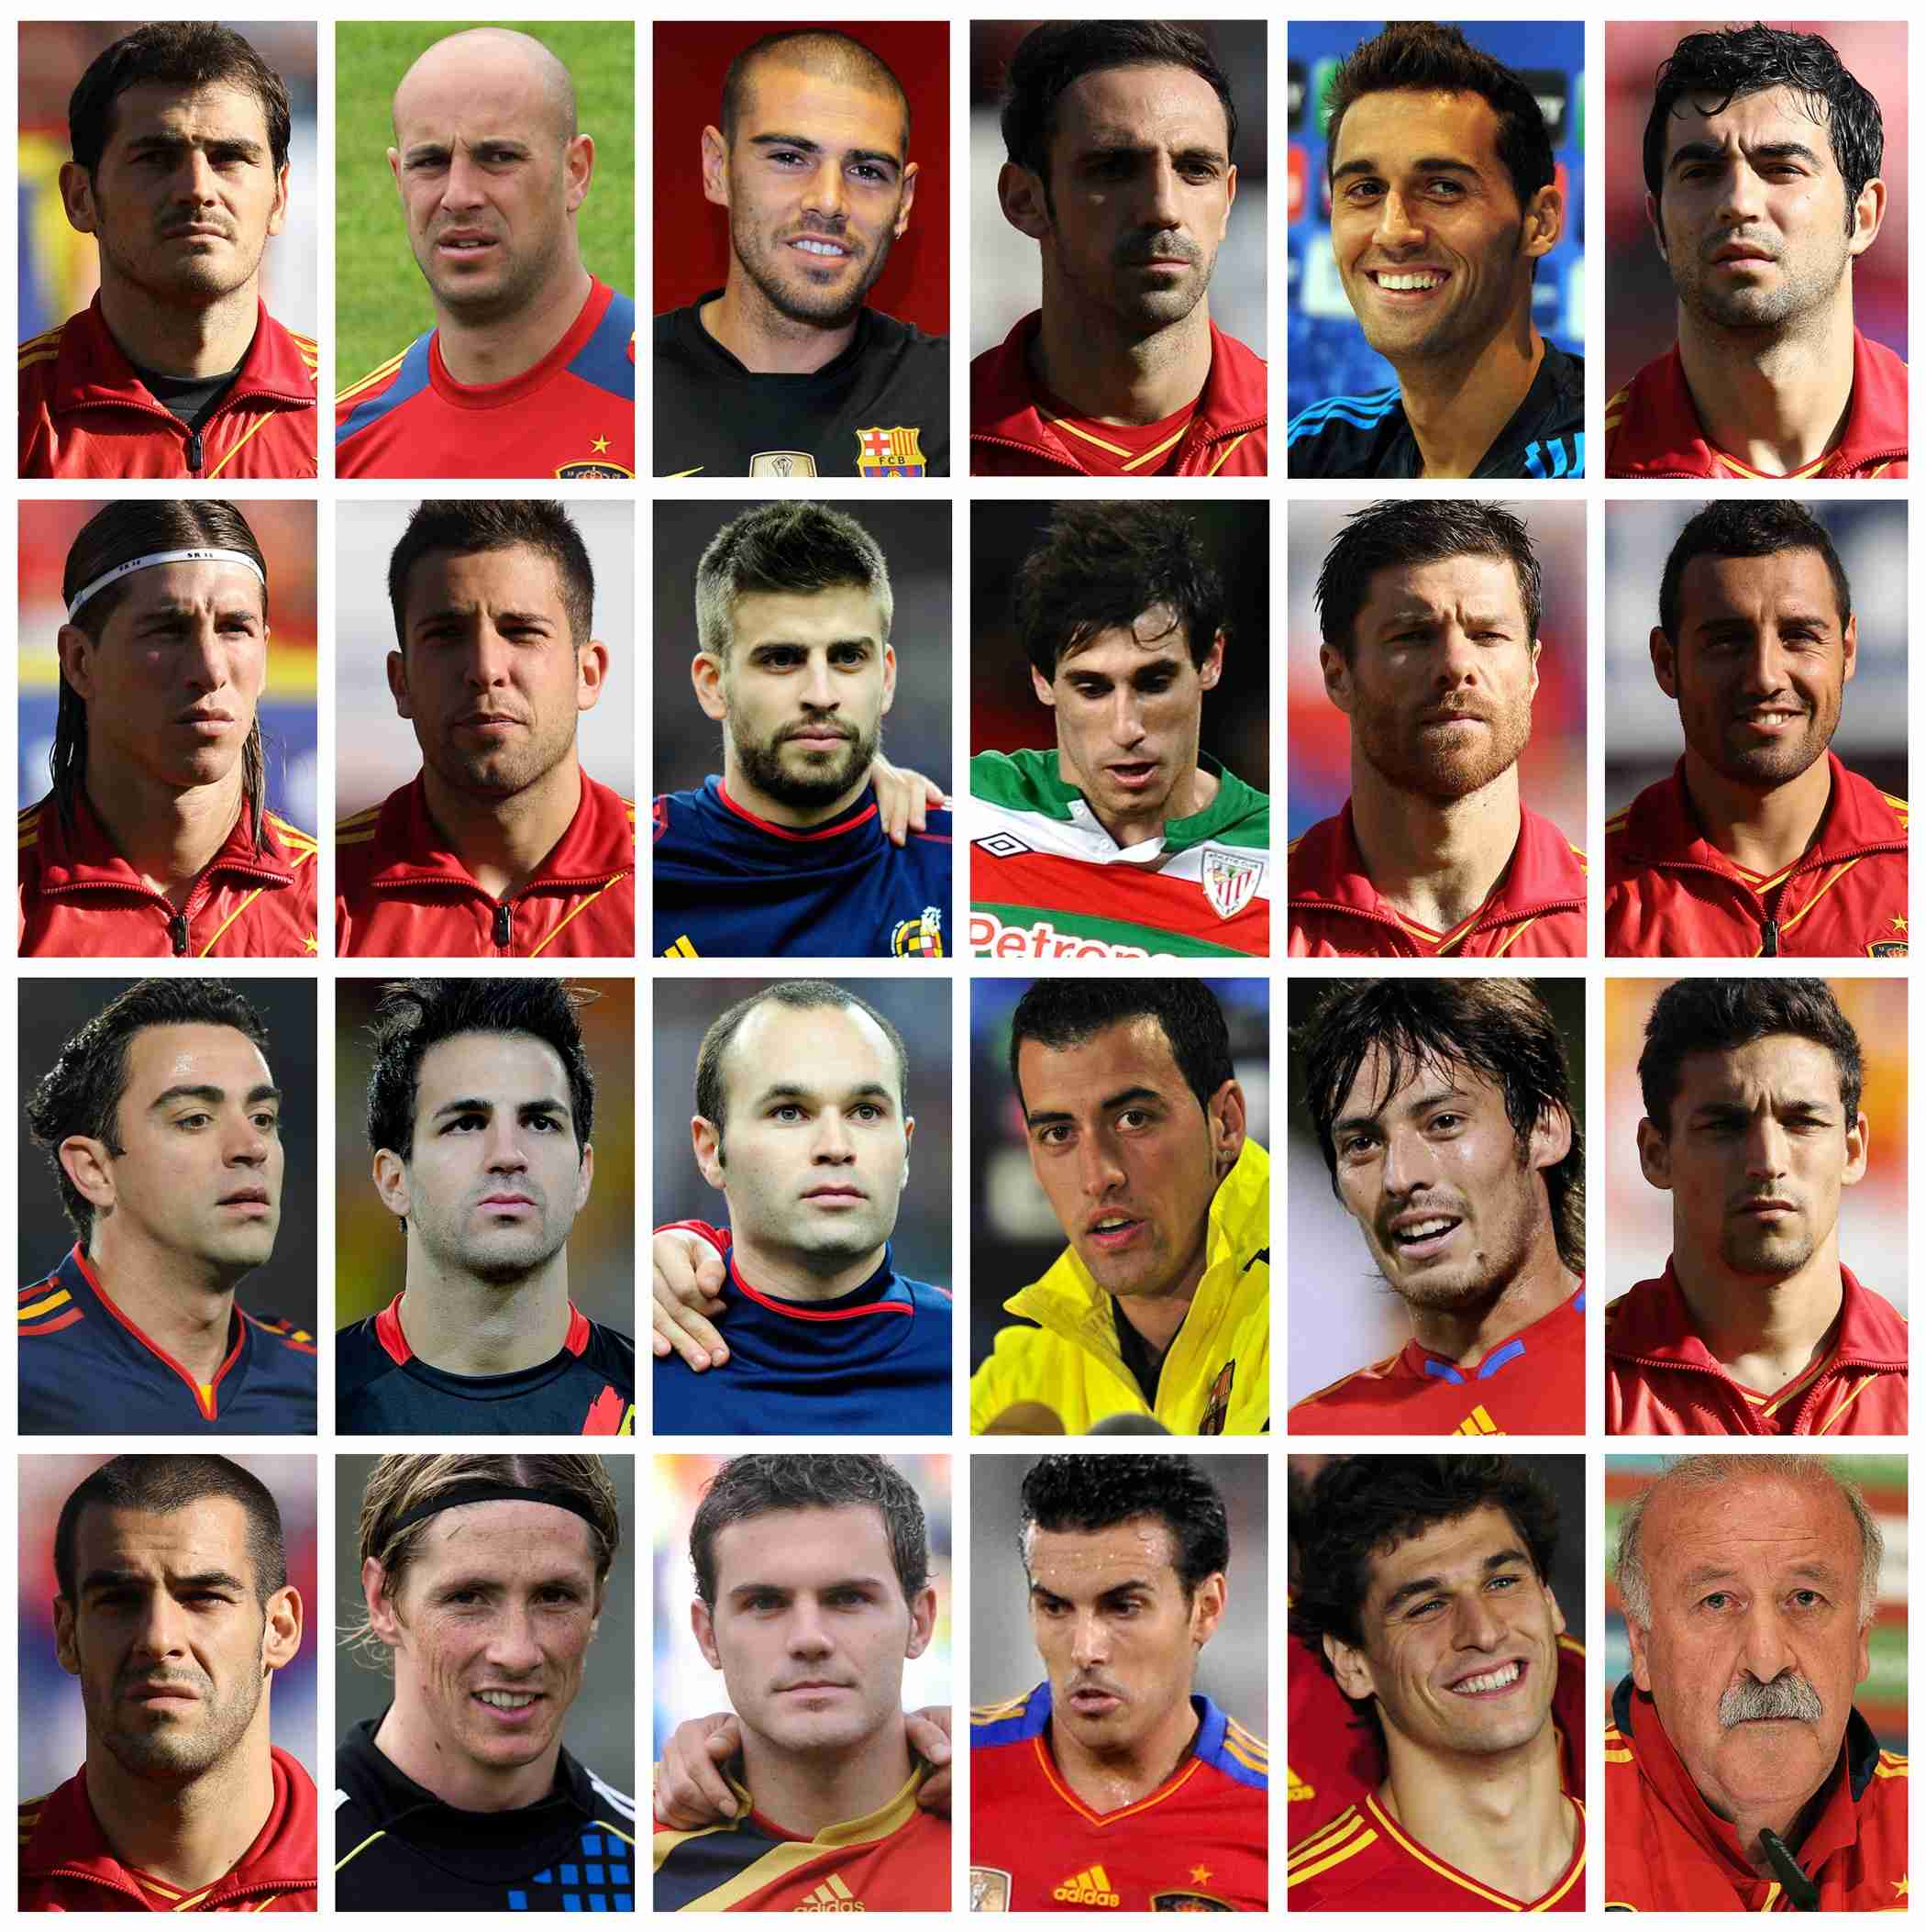 Топ великих футболистов мира. самые известные футболисты в мире: фото с именами